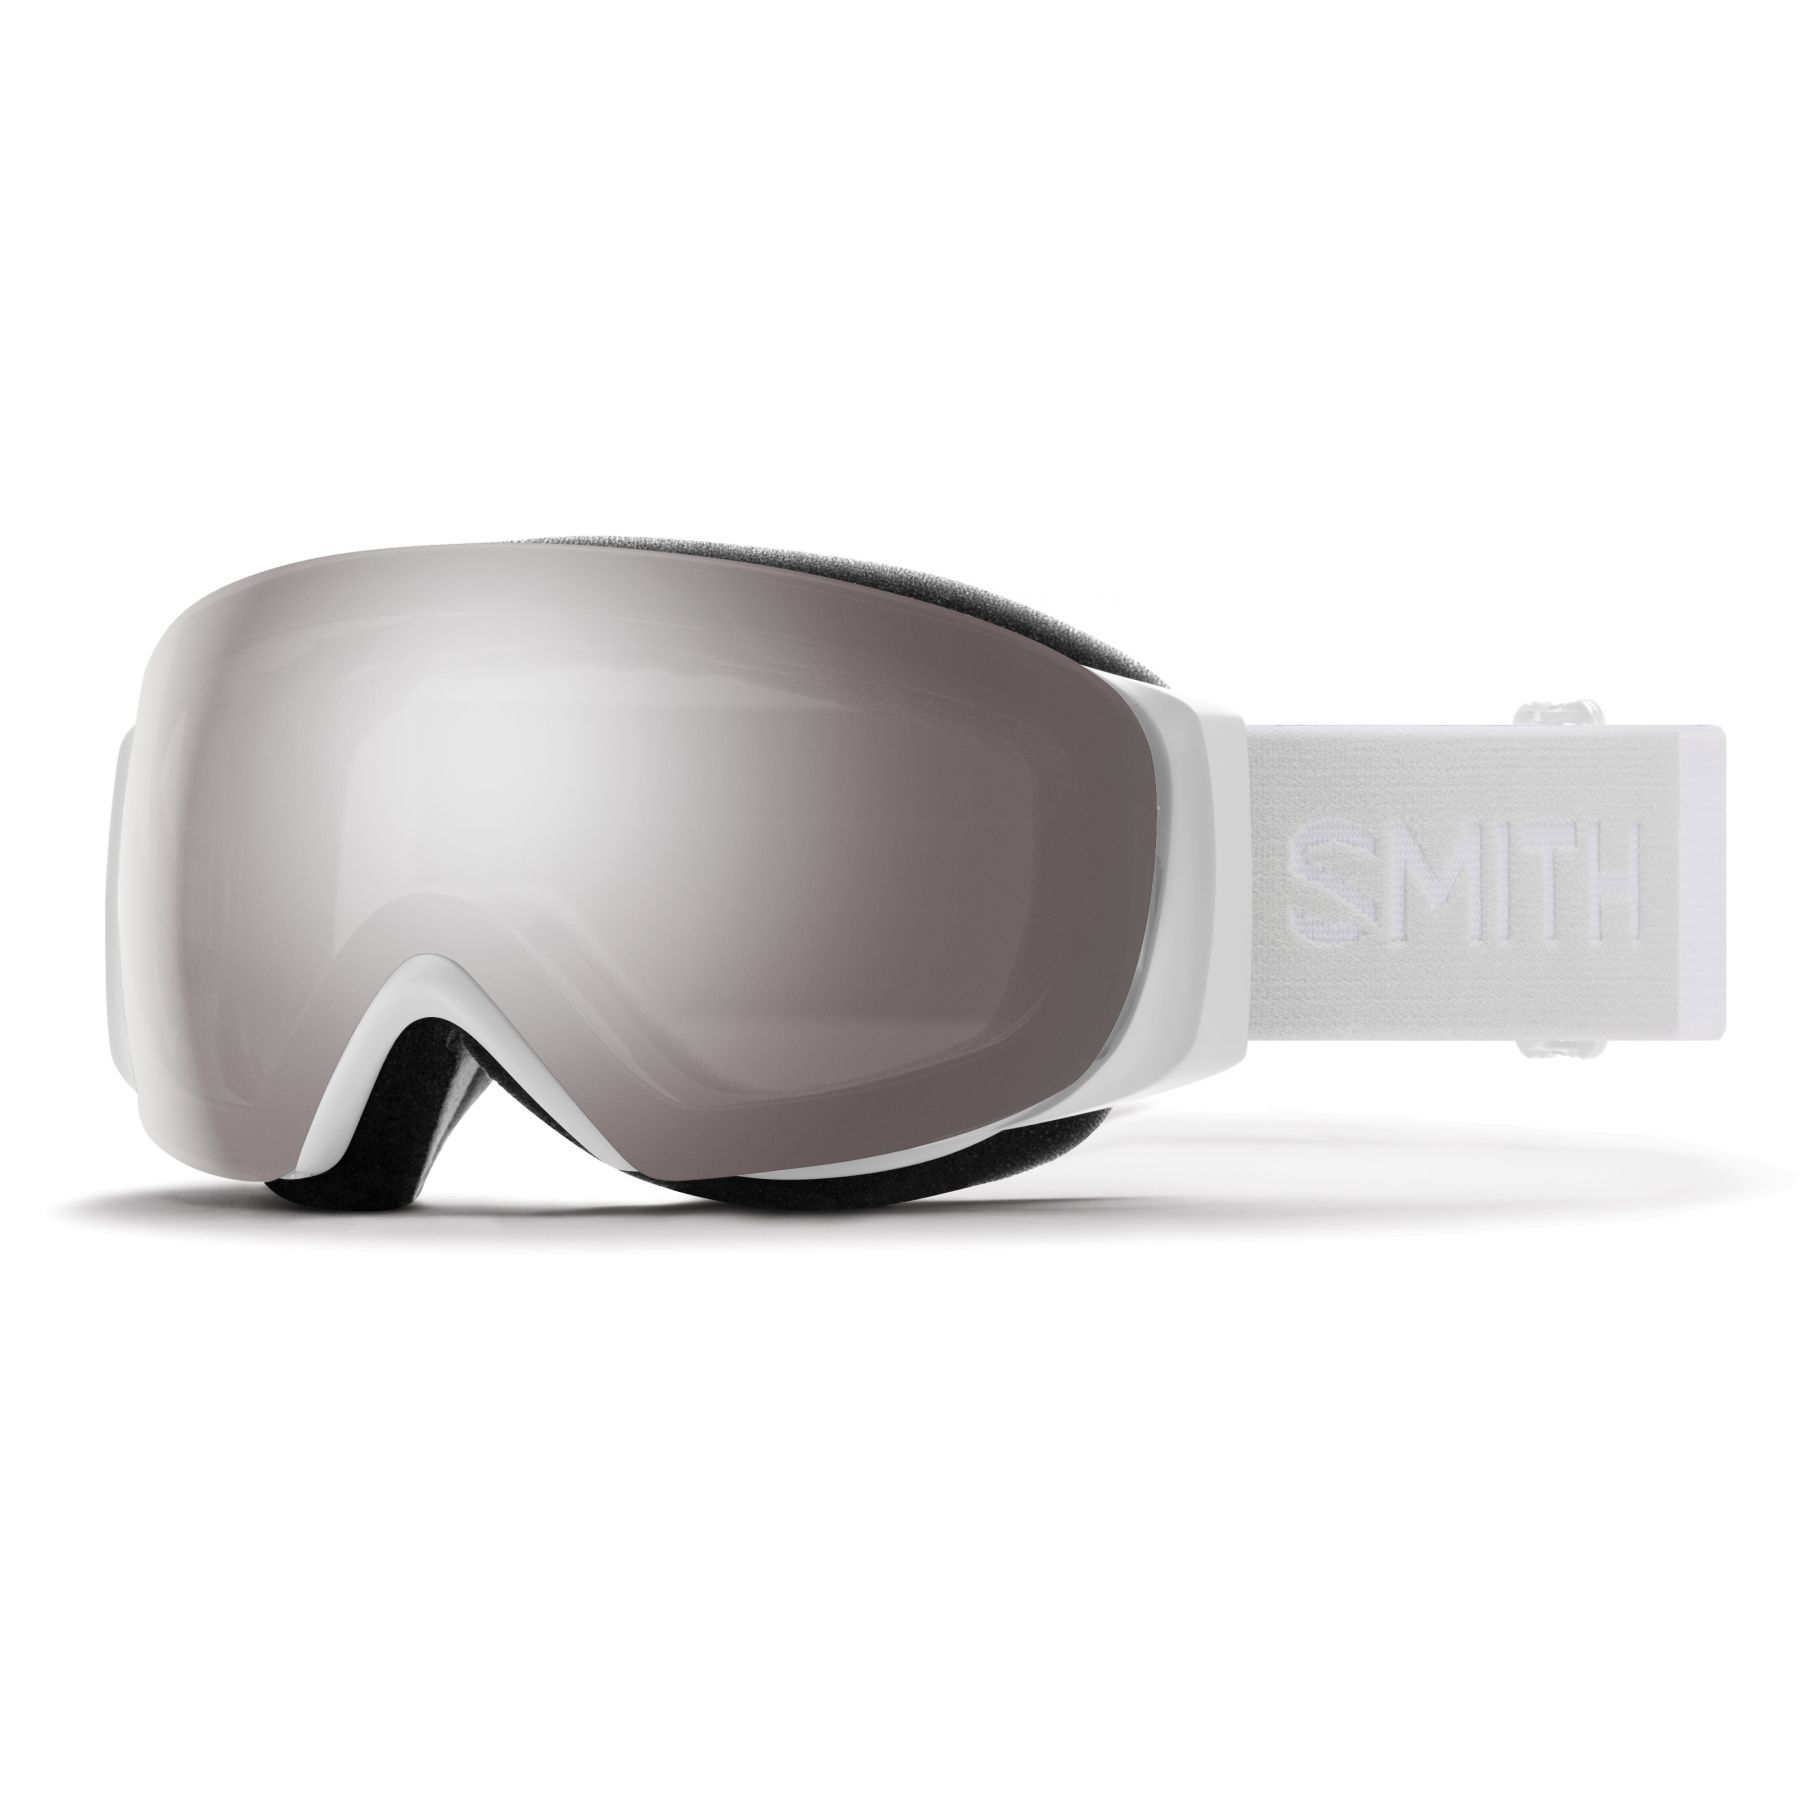 Billede af Smith I/O MAG S, skibriller, White Vapor hos Skisport.dk